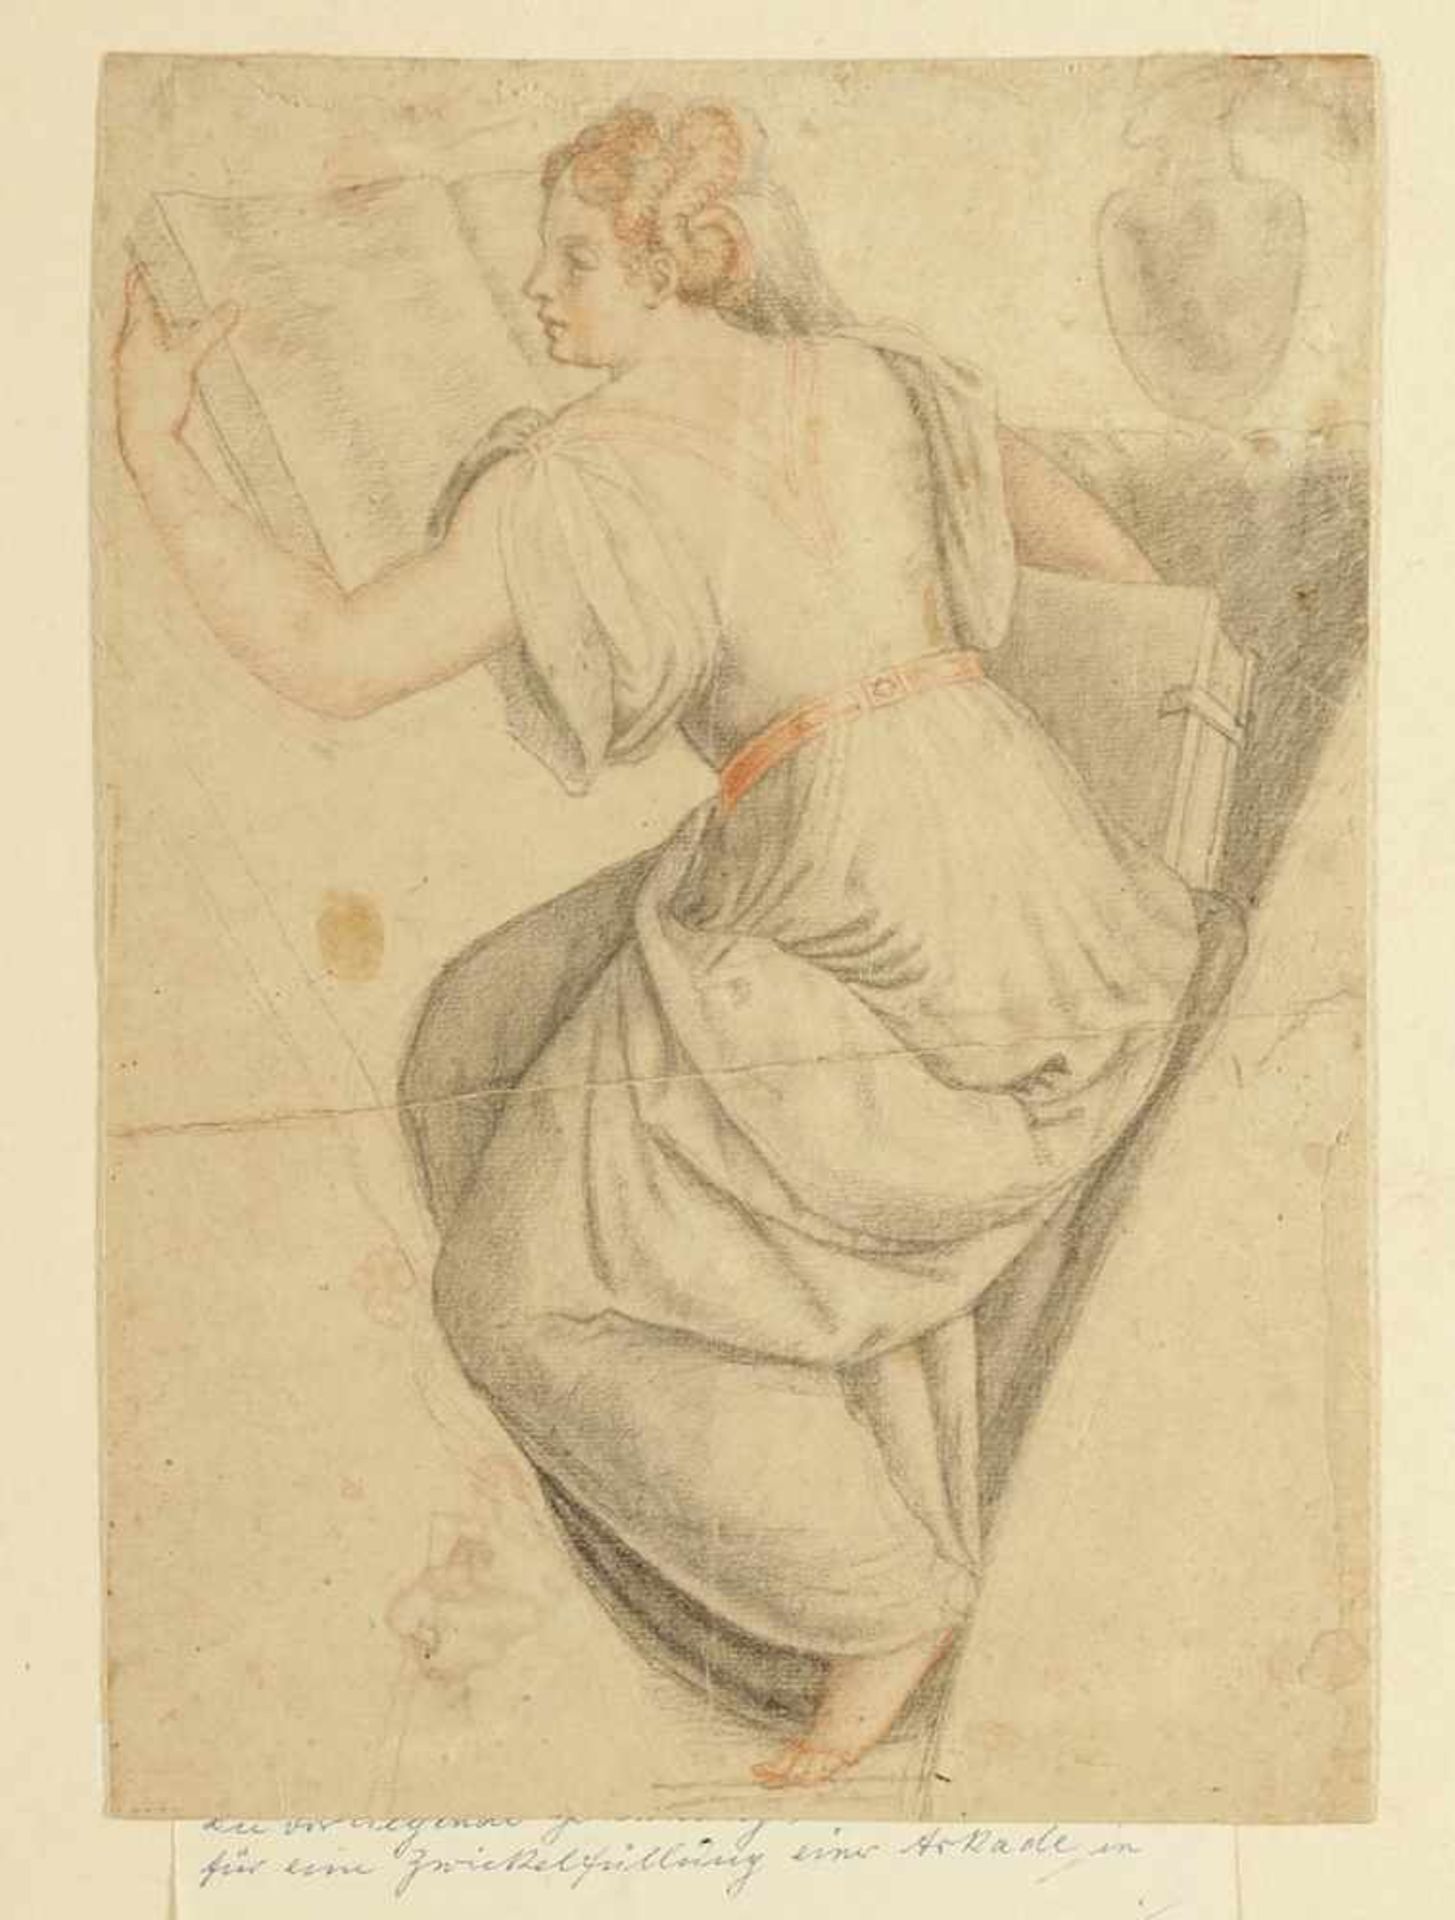 Umkreis von Sebastiano del Piombo frühes 16. Jahrhundert - Sibylle beim lesen - Bleistift und